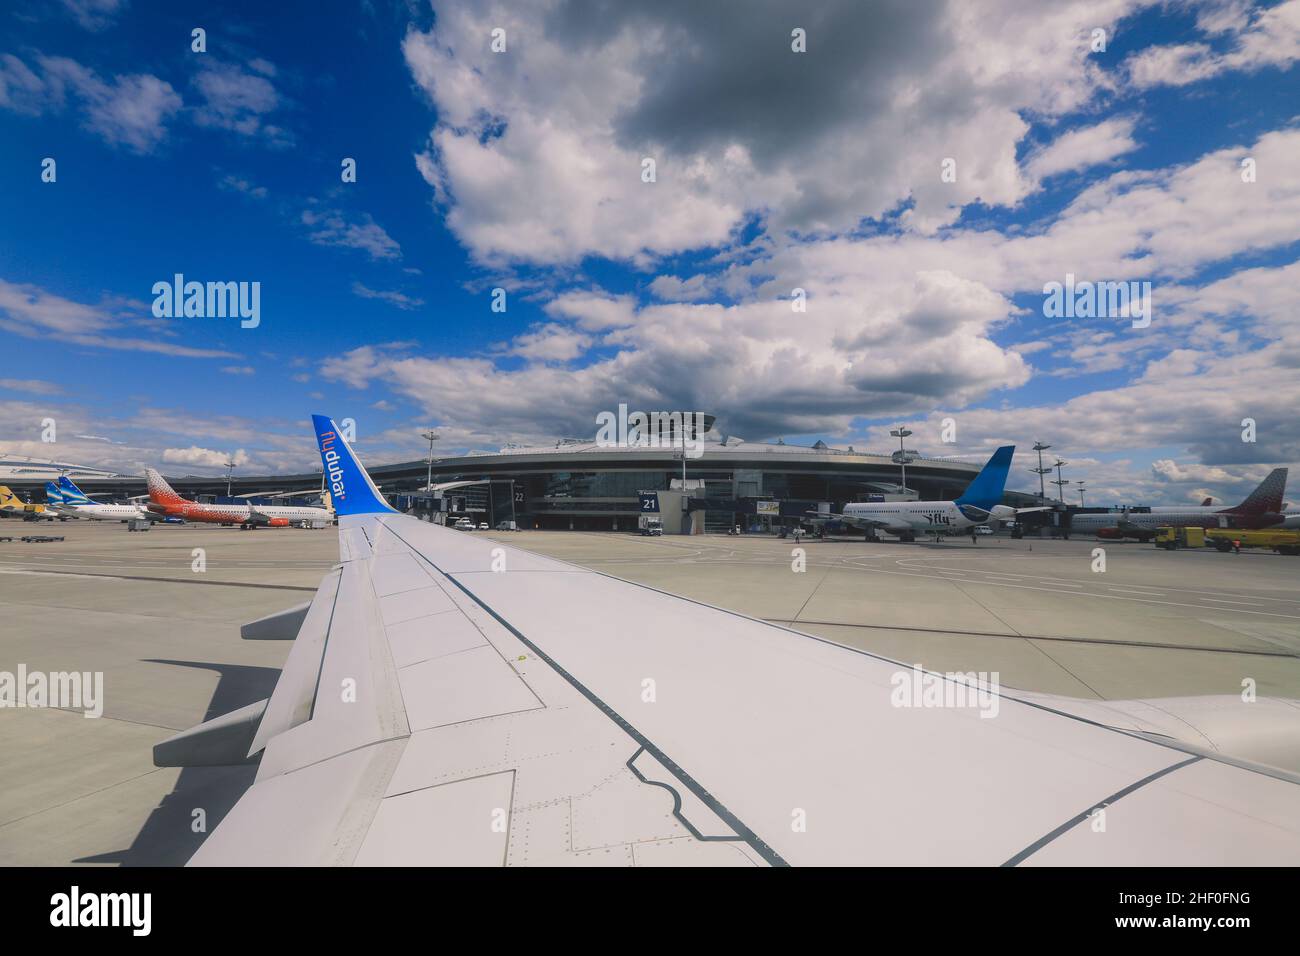 Dubaï, Émirats arabes Unis - 10 juin 2021 : vue de la fenêtre de l'aile de l'avion et ciel bleu nuageux Banque D'Images